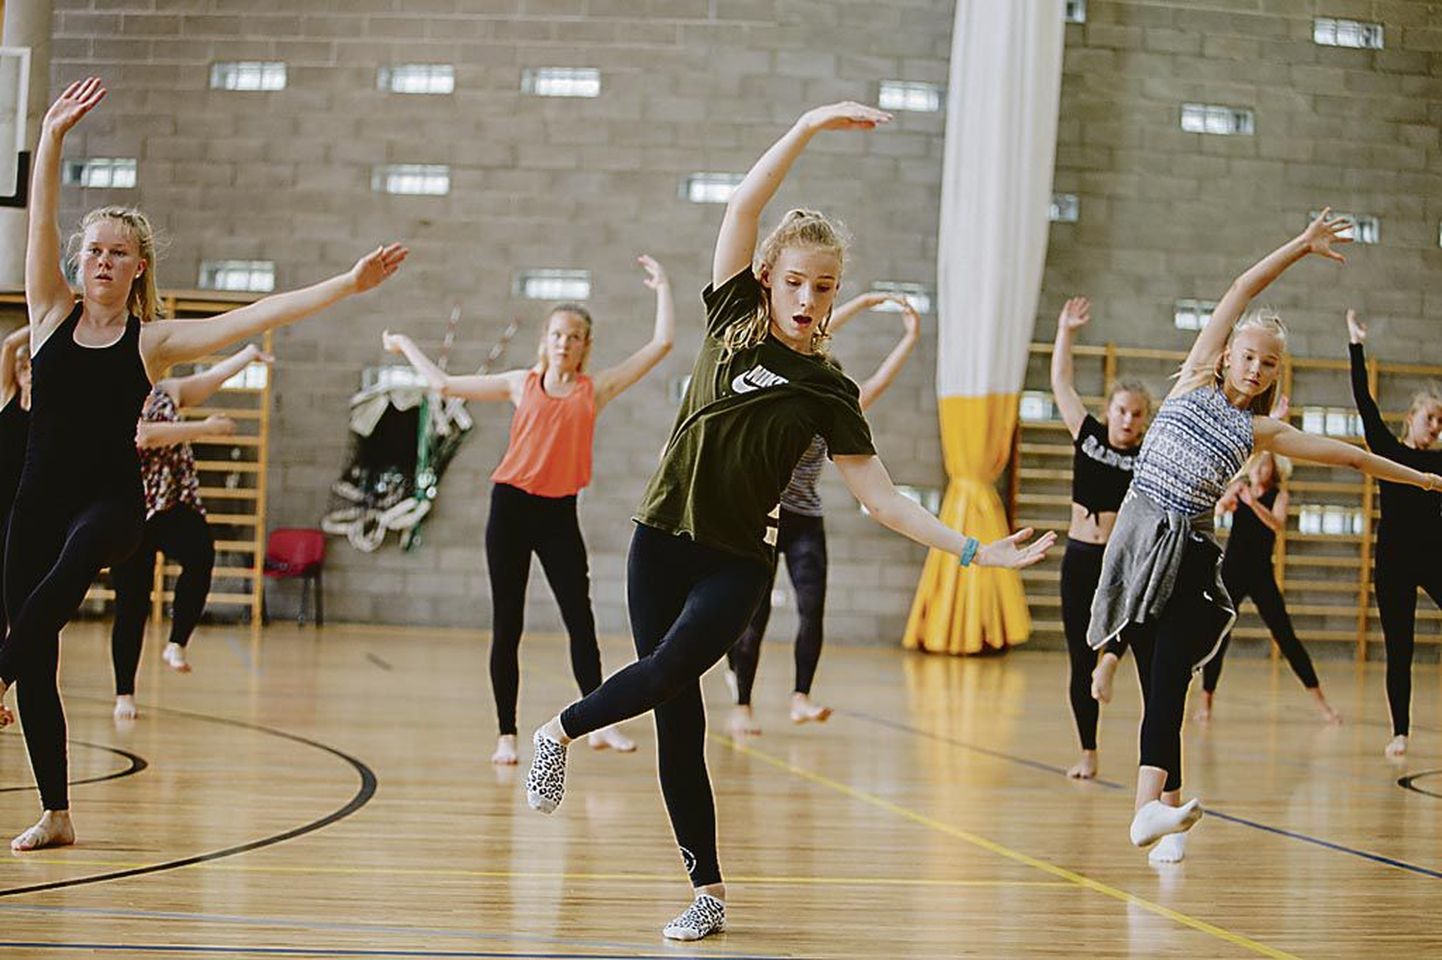 Pärnu tantsib 2017 tantsuakadeemia viimased pingutused tuli teha reedel peaproovis ja kontserdil.